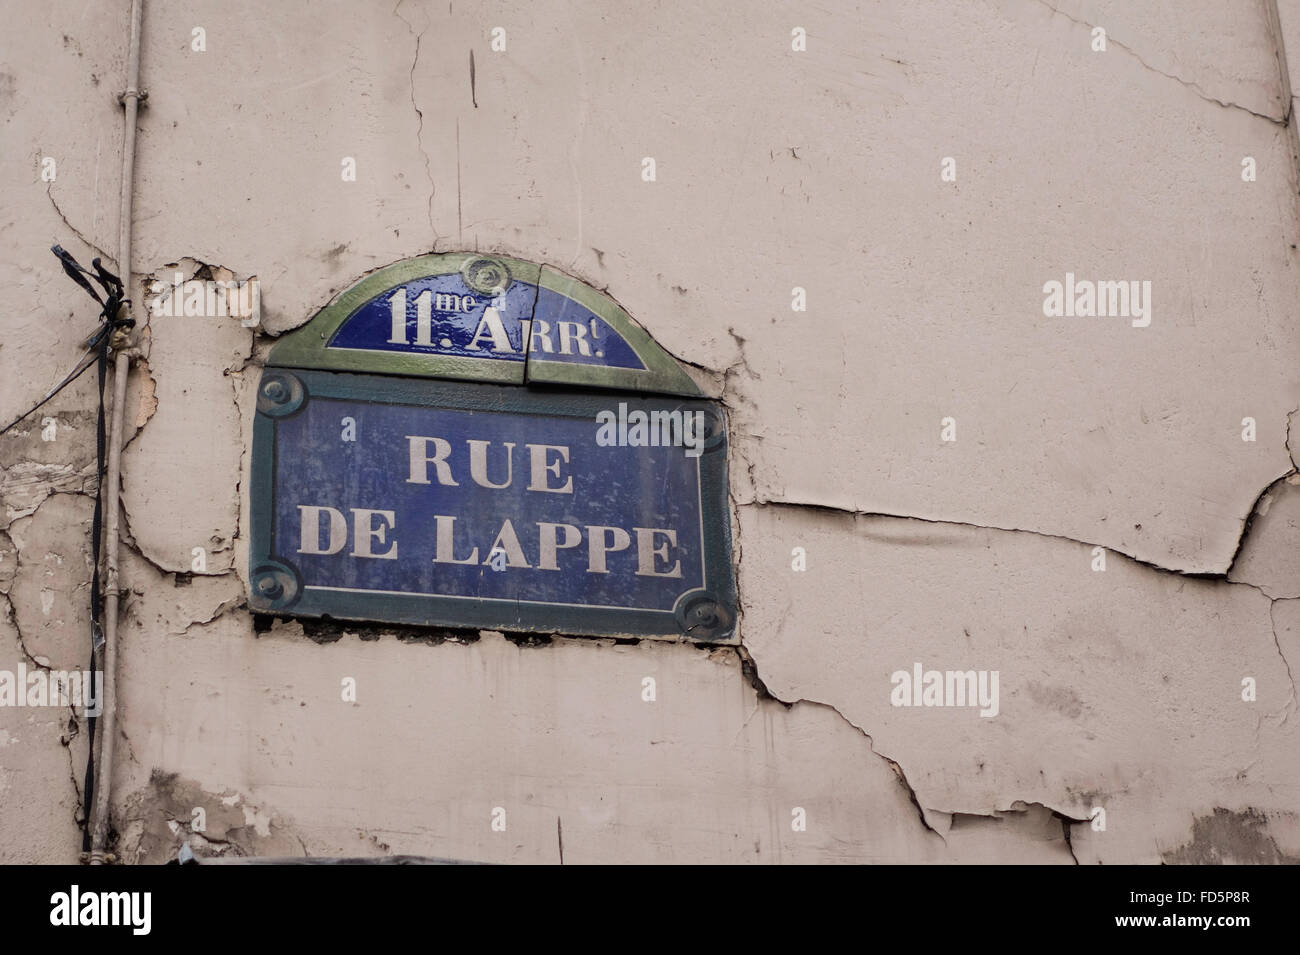 Rue de Lappe, 11th arrondisement vintage metal street sign, Paris, France. Stock Photo